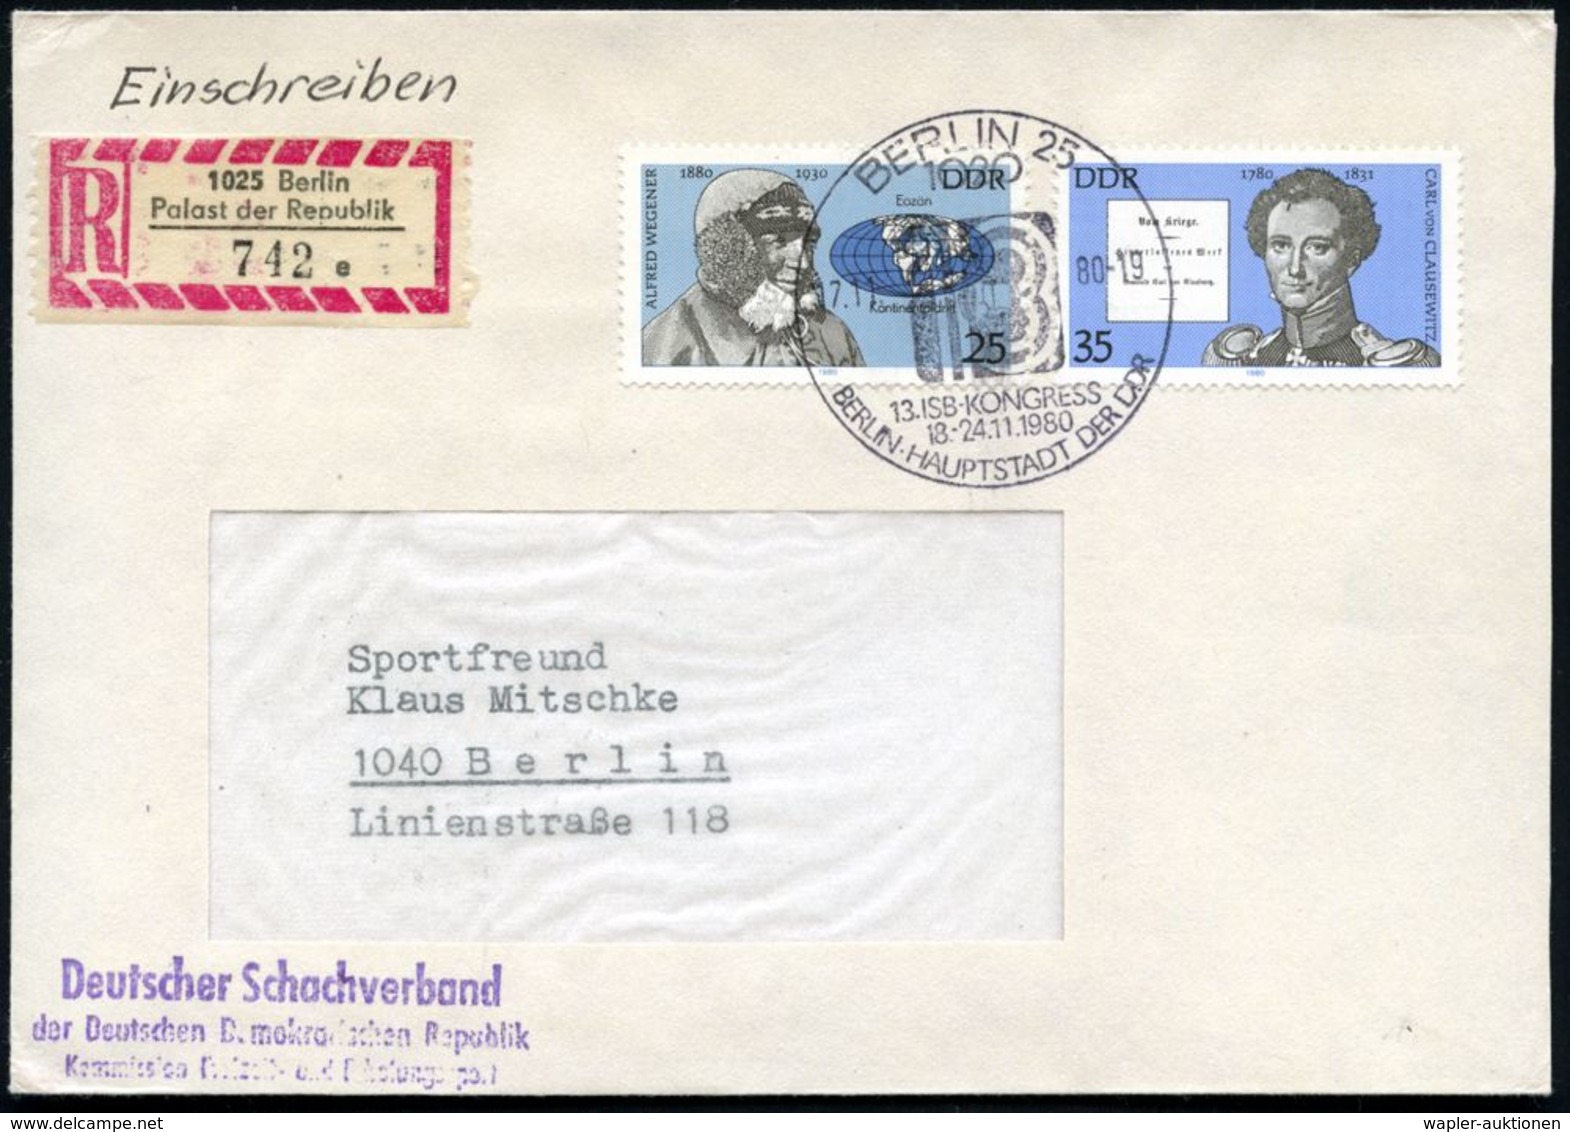 1020 BERLIN 25/ 13.I S B - KONGRESS.. 1980 (7.11.) SSt + Sonder-RZ: 1025 Berlin/Palast Der Republik/a = Hauspostamt Der  - Echecs